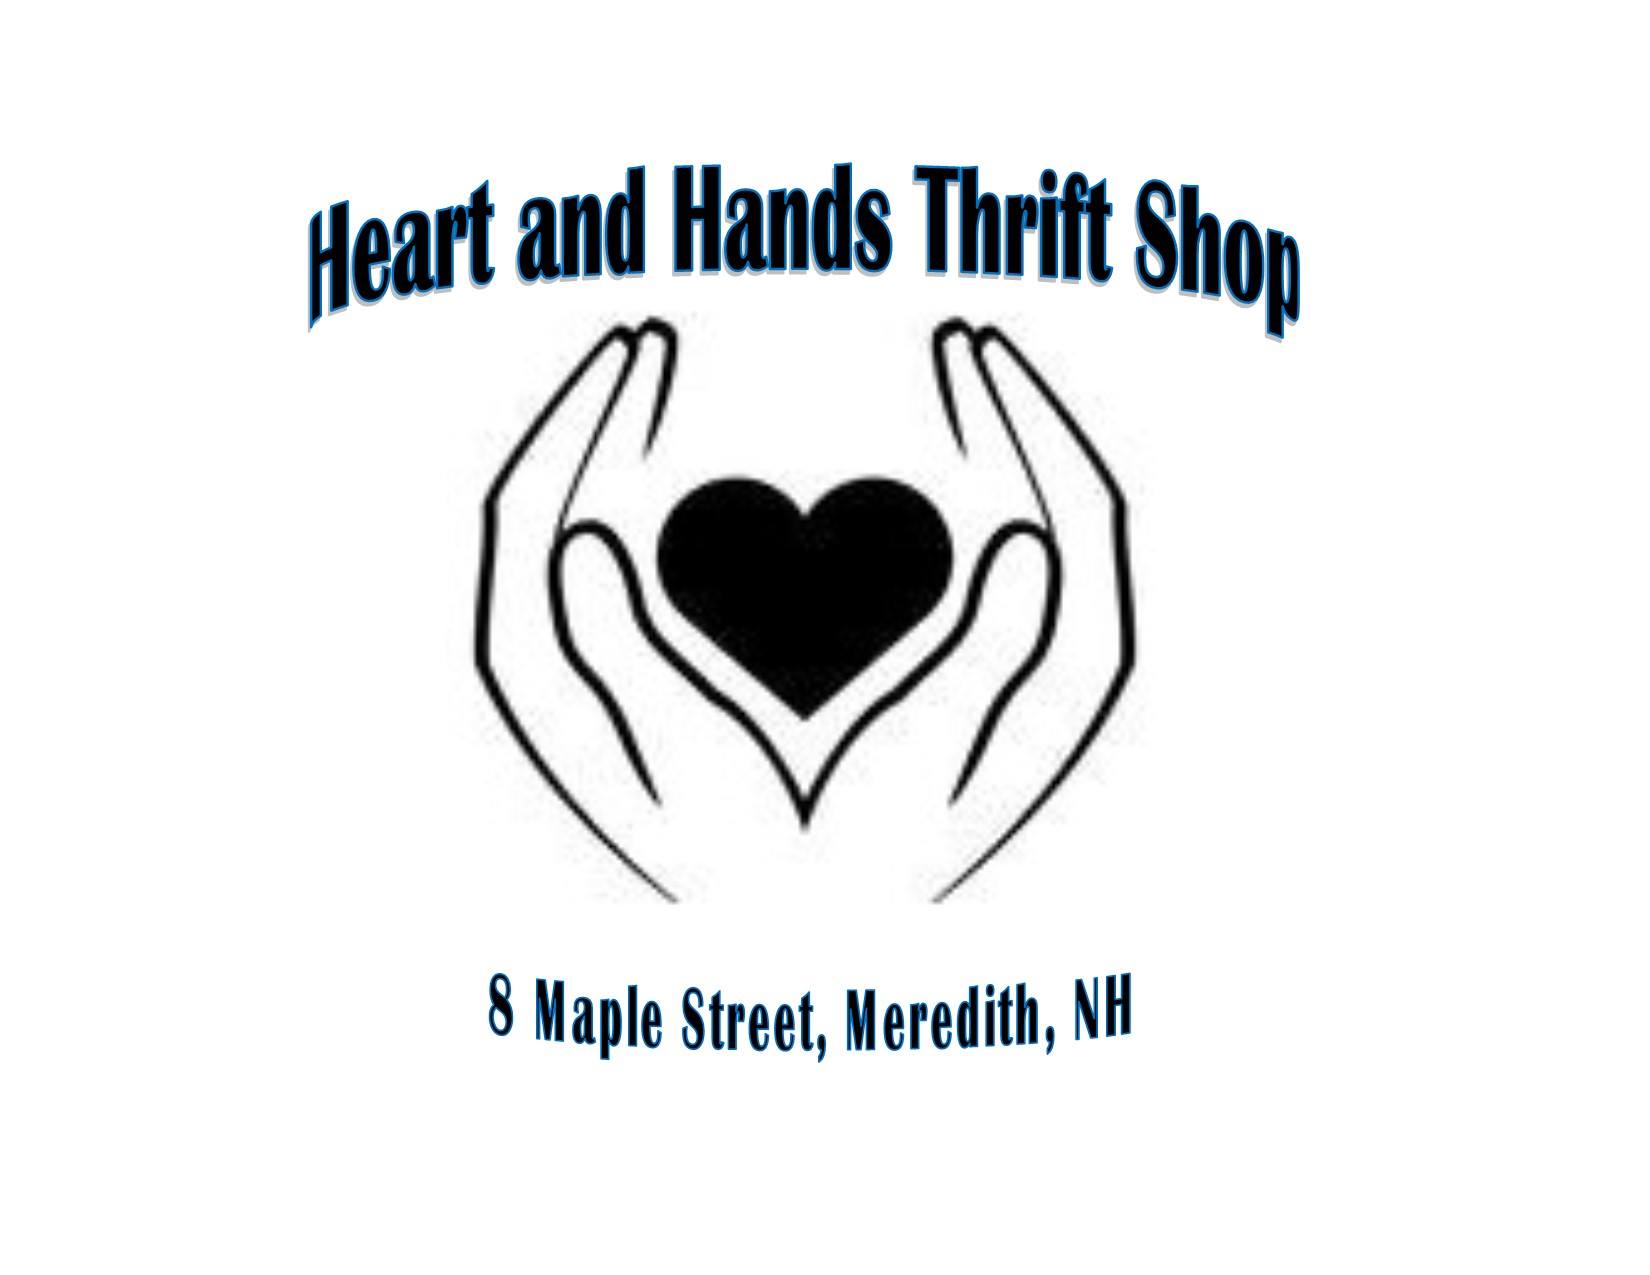 Heart and Hands Thrift Shop